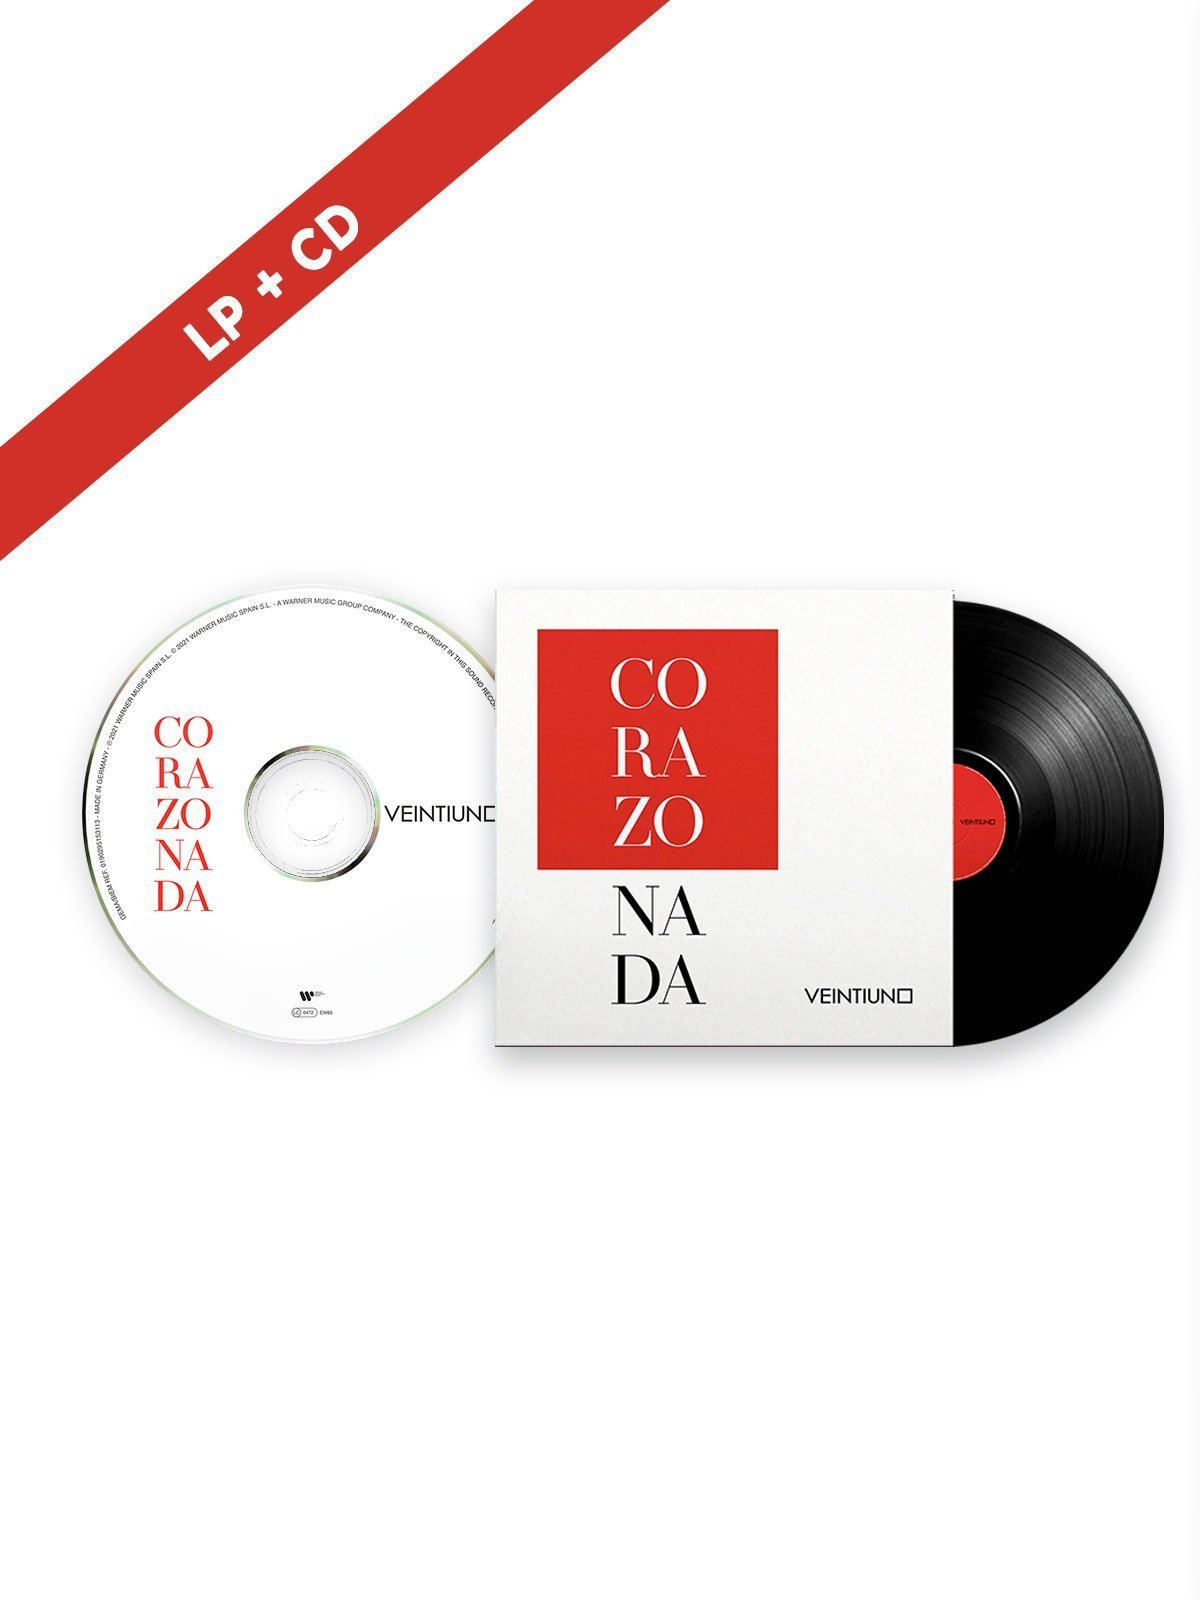 Veintiuno - Edición LP + CD "Corazonada" - Rocktud - Veintiuno